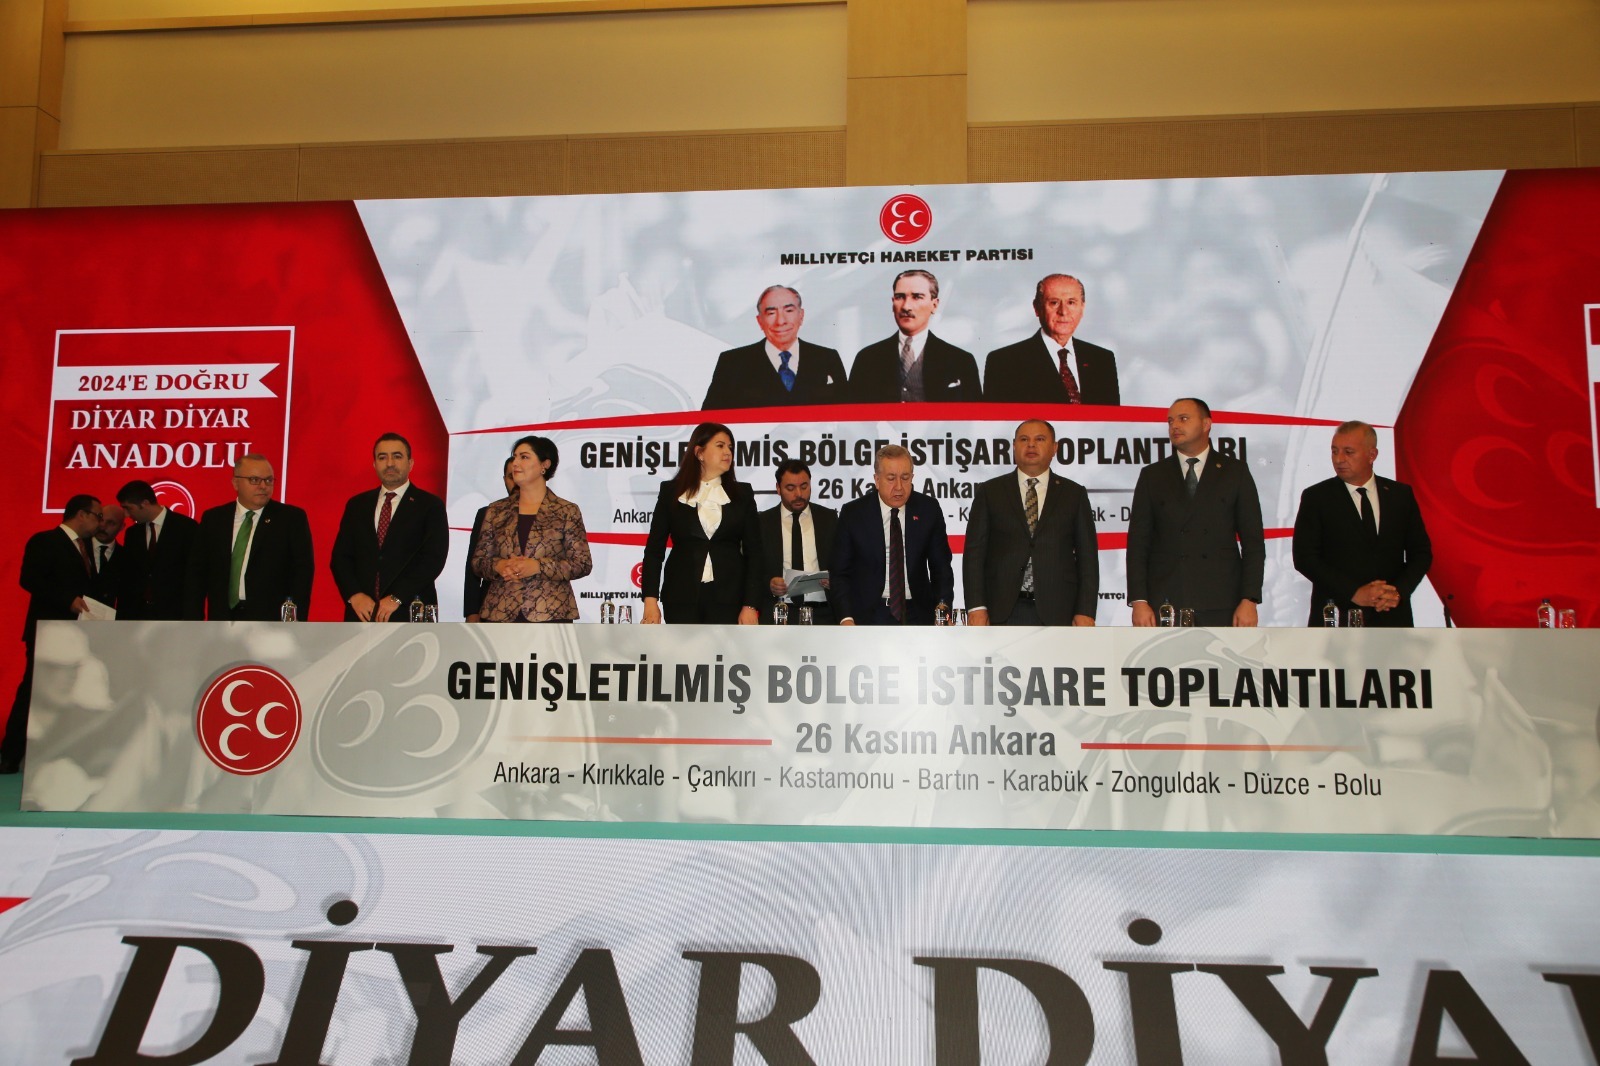 Gölbaşı Belediye Başkanı Ramazan Şimşek, MHP Ankara İl Başkanlığı Genişletilmiş Bölge İstişare Toplantısı’na Katıldı